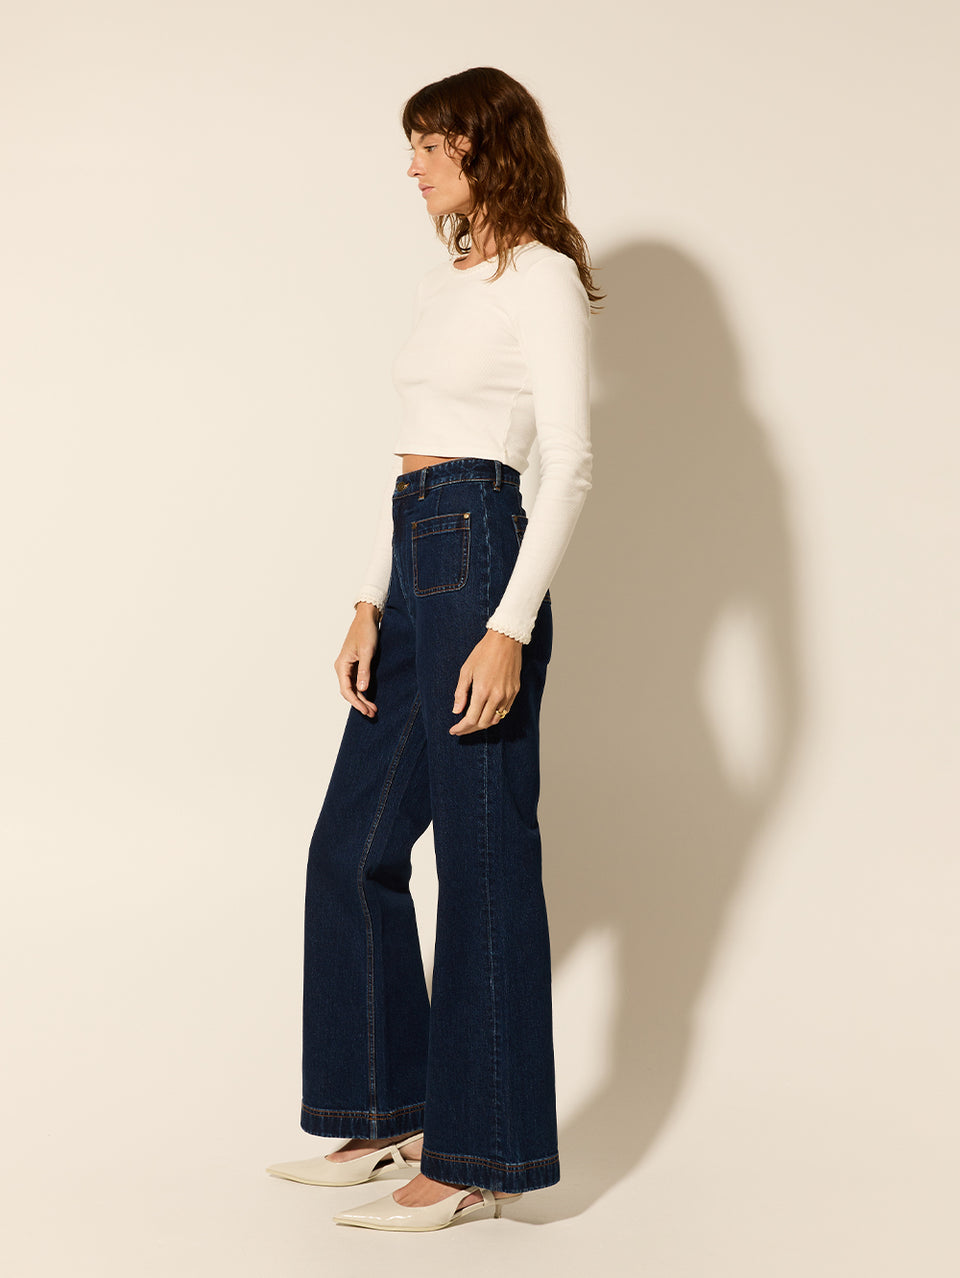 Dominique Jean KIVARI | Model wears denim jean side view